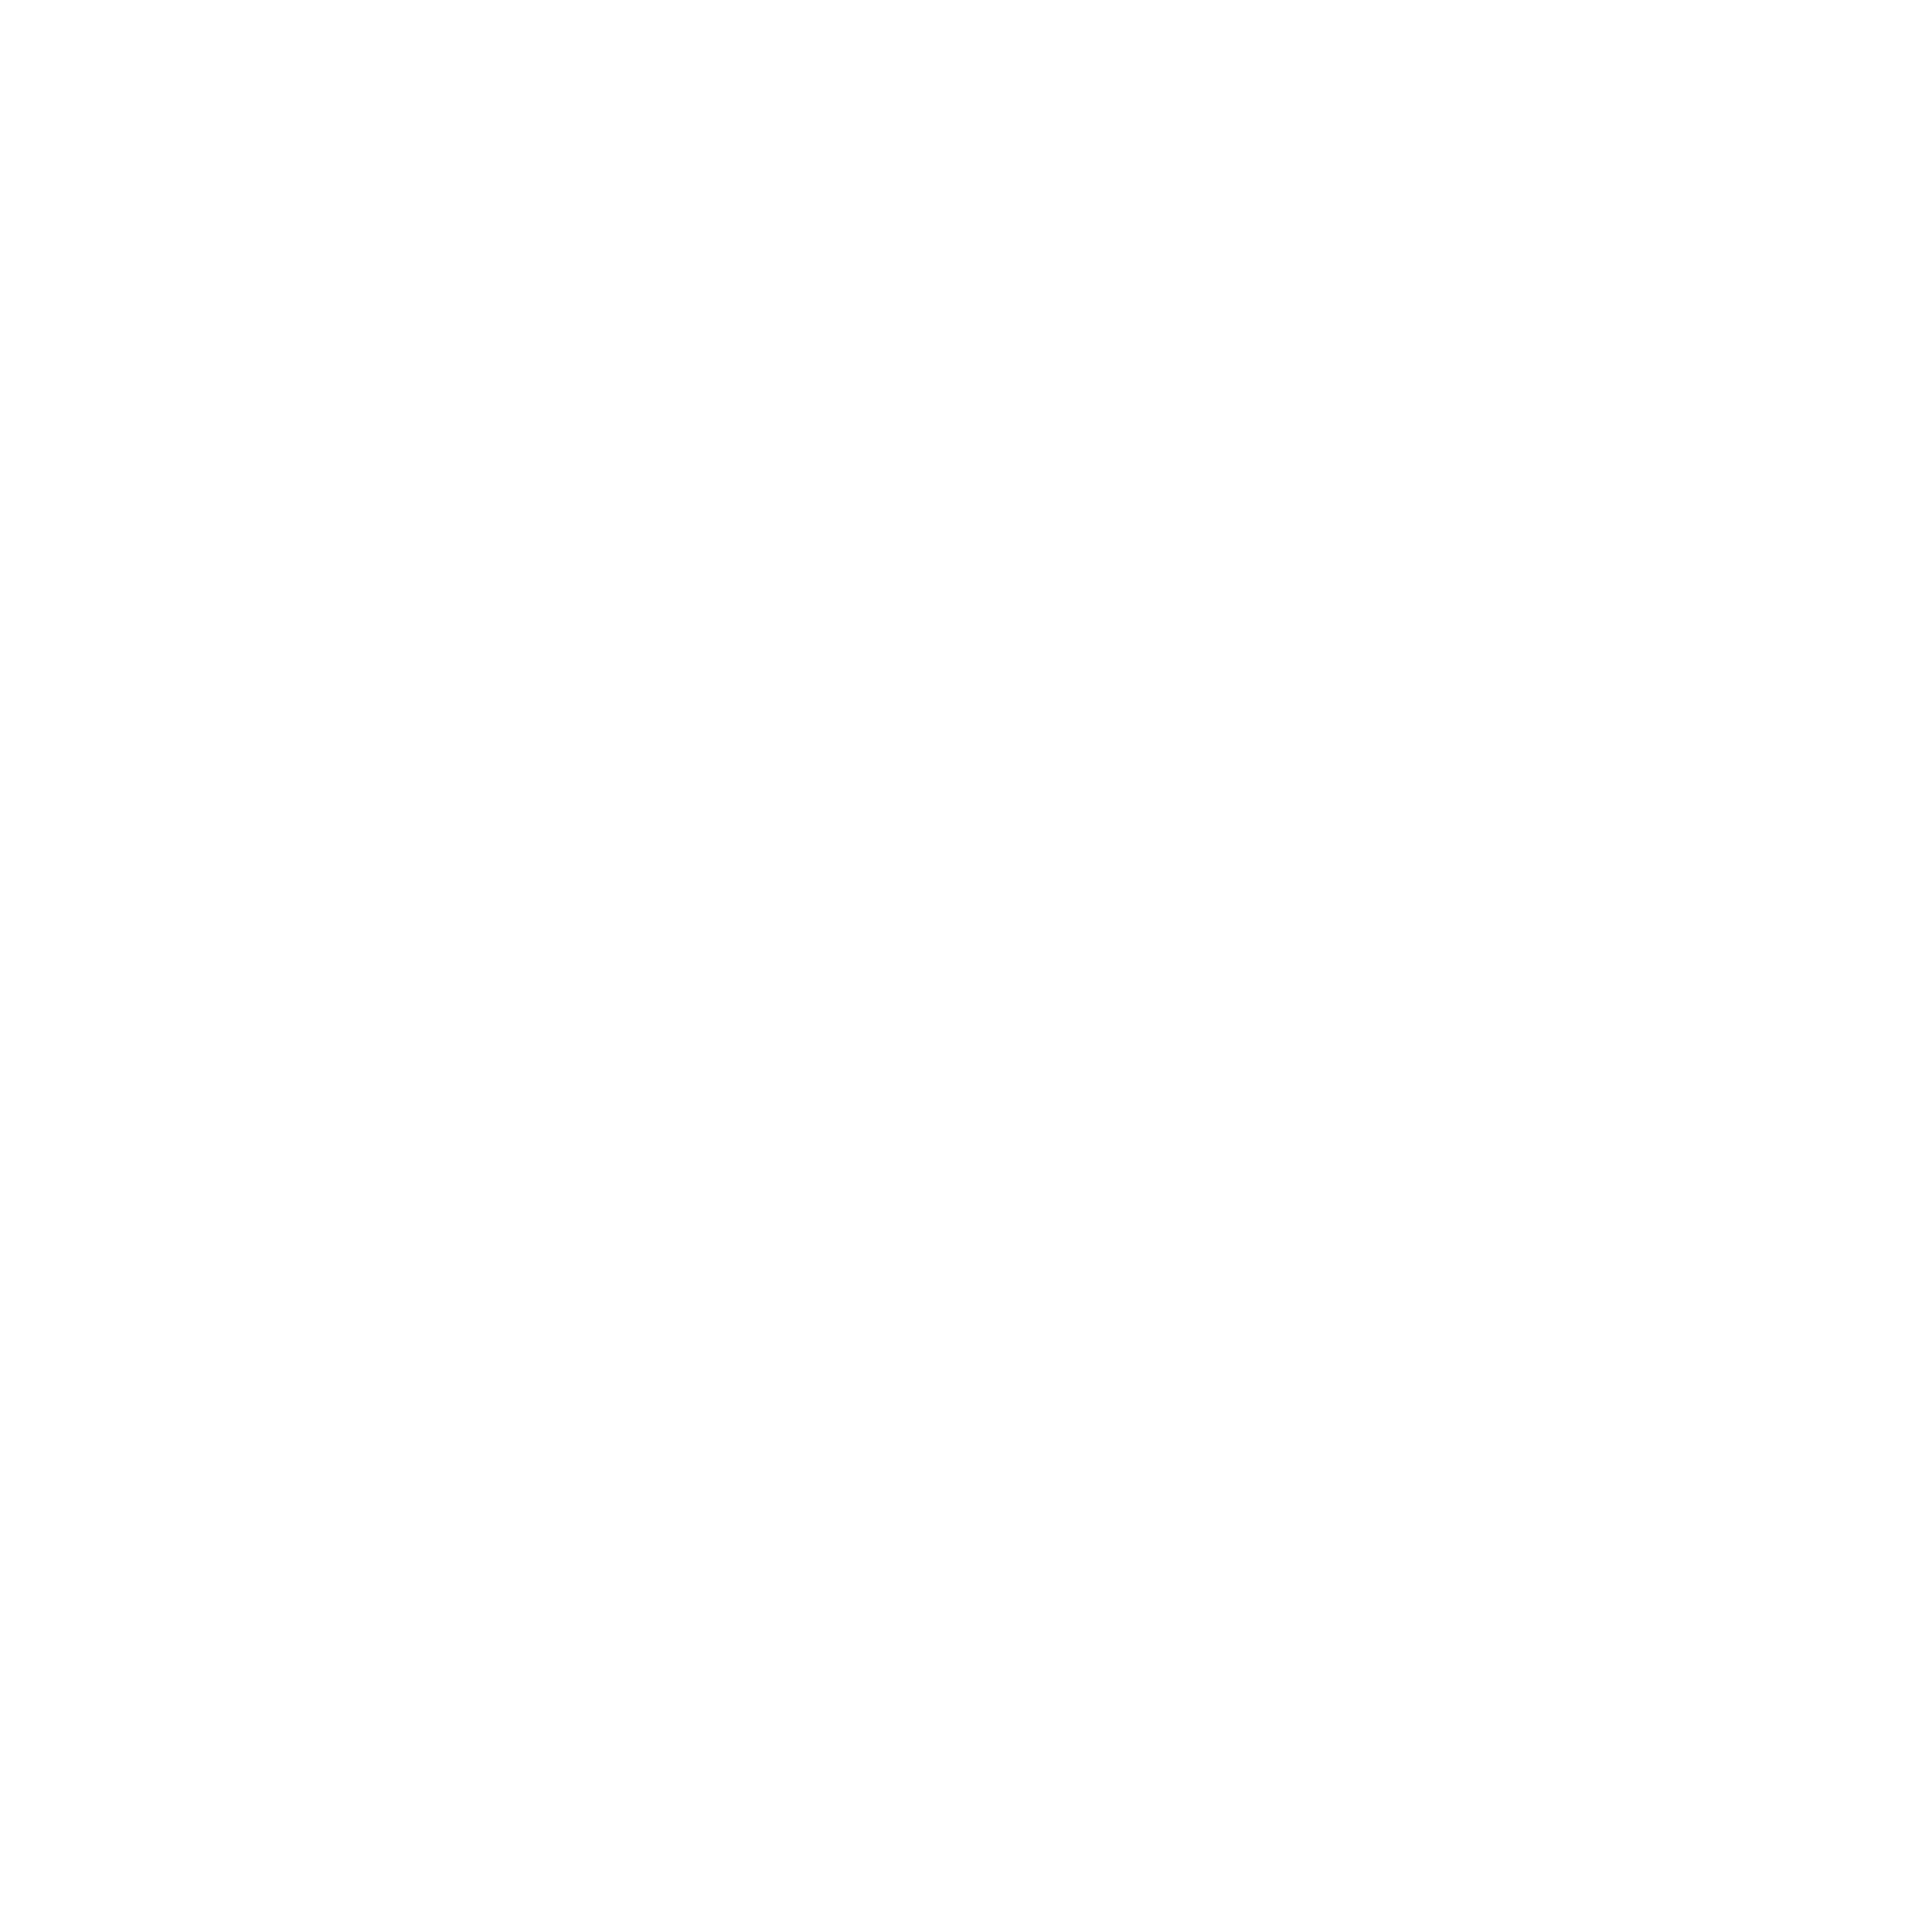 RAMP logo 